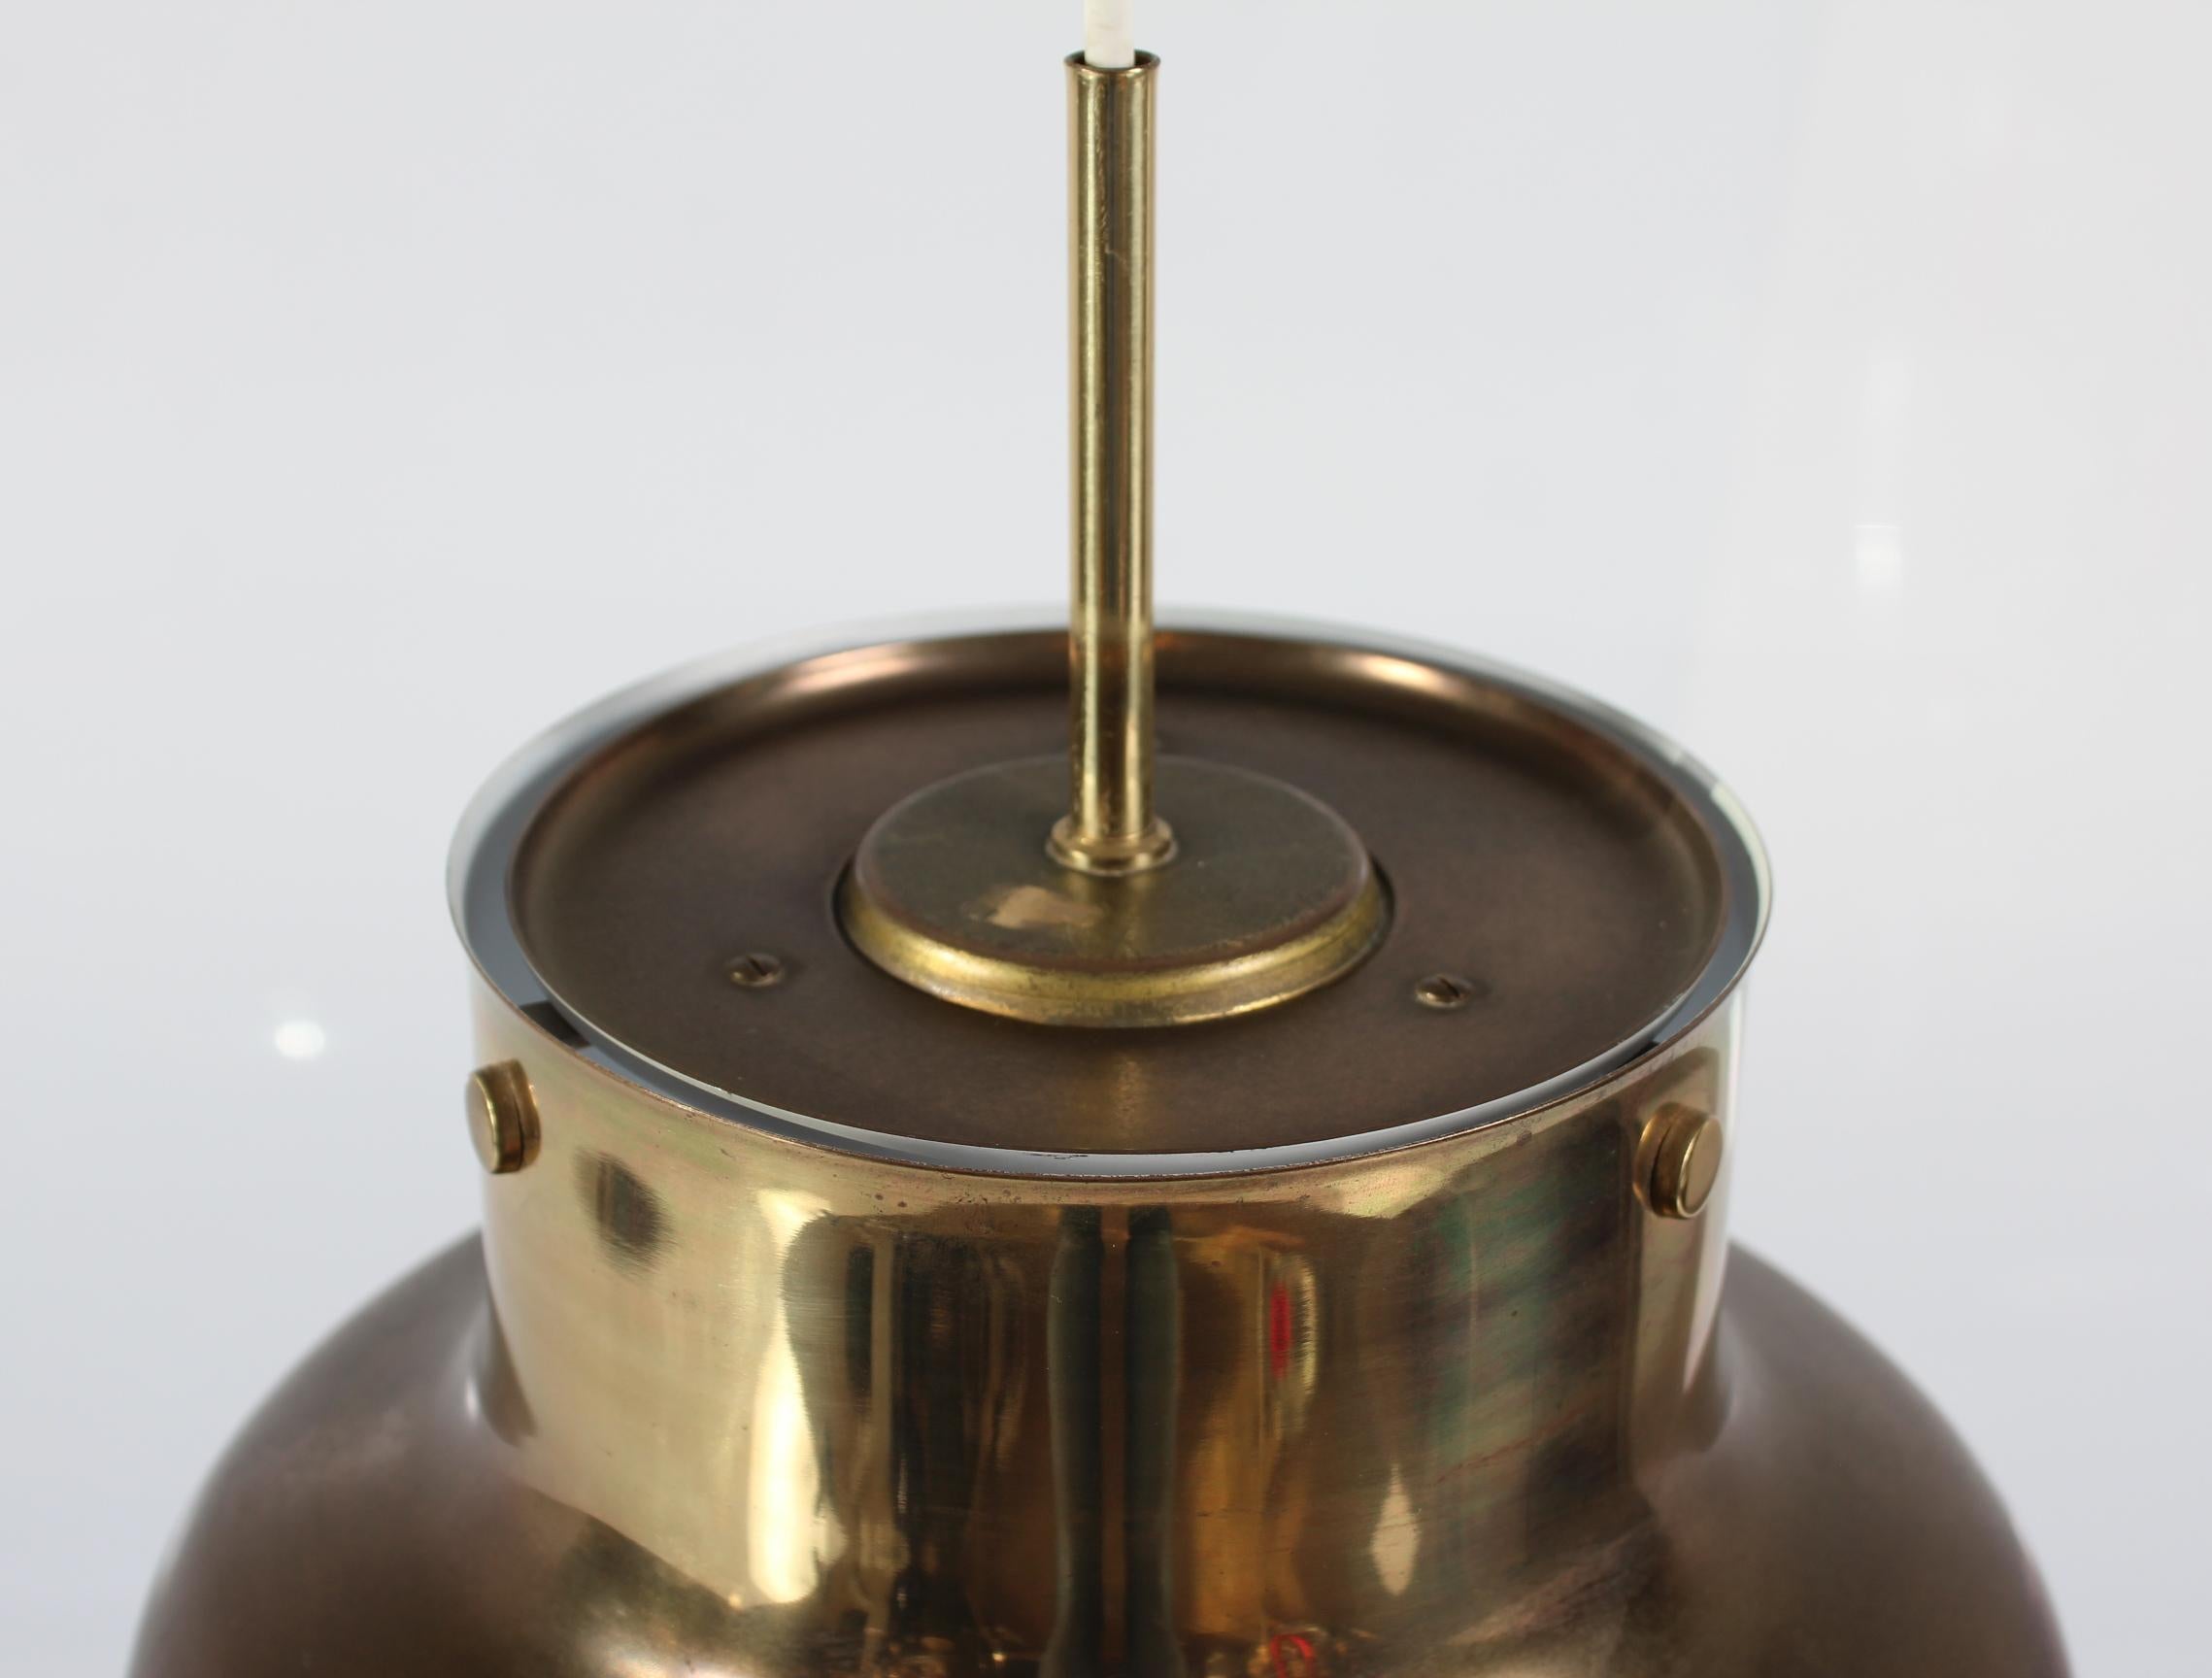 Plafonnier original Anders Pehrsson Bumling fabriqué par le fabricant suédois de lampes Ateljé Lyktan dans les années 1970.

La lampe est en laiton patiné et reste en bon état avec une fonction complète.
Cet article n'a pas de grille en plastique à